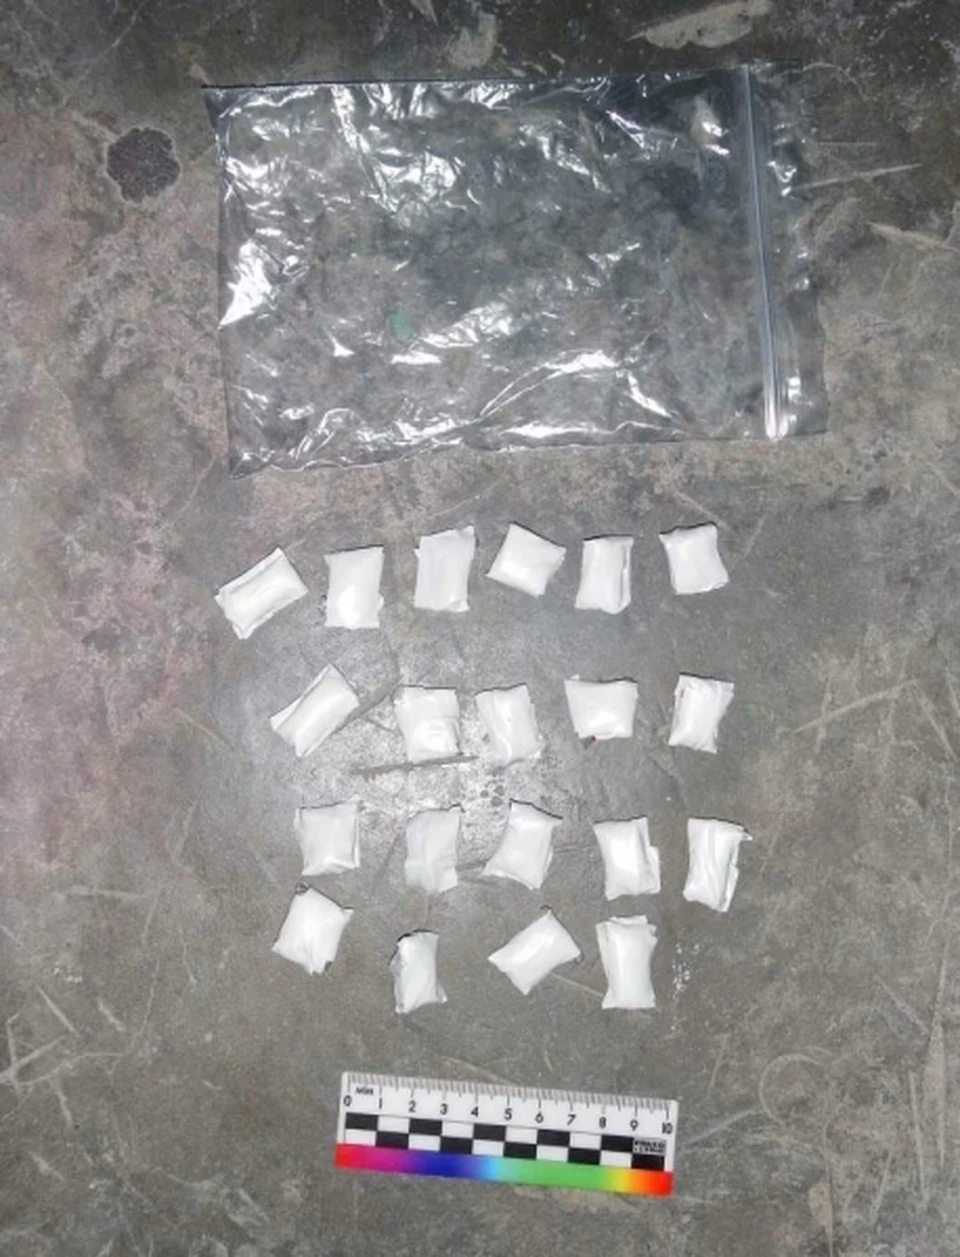 У жителя Радужного найдены наркотики в пачке из-под печенья Фото: ОМВД России по г. Радужному